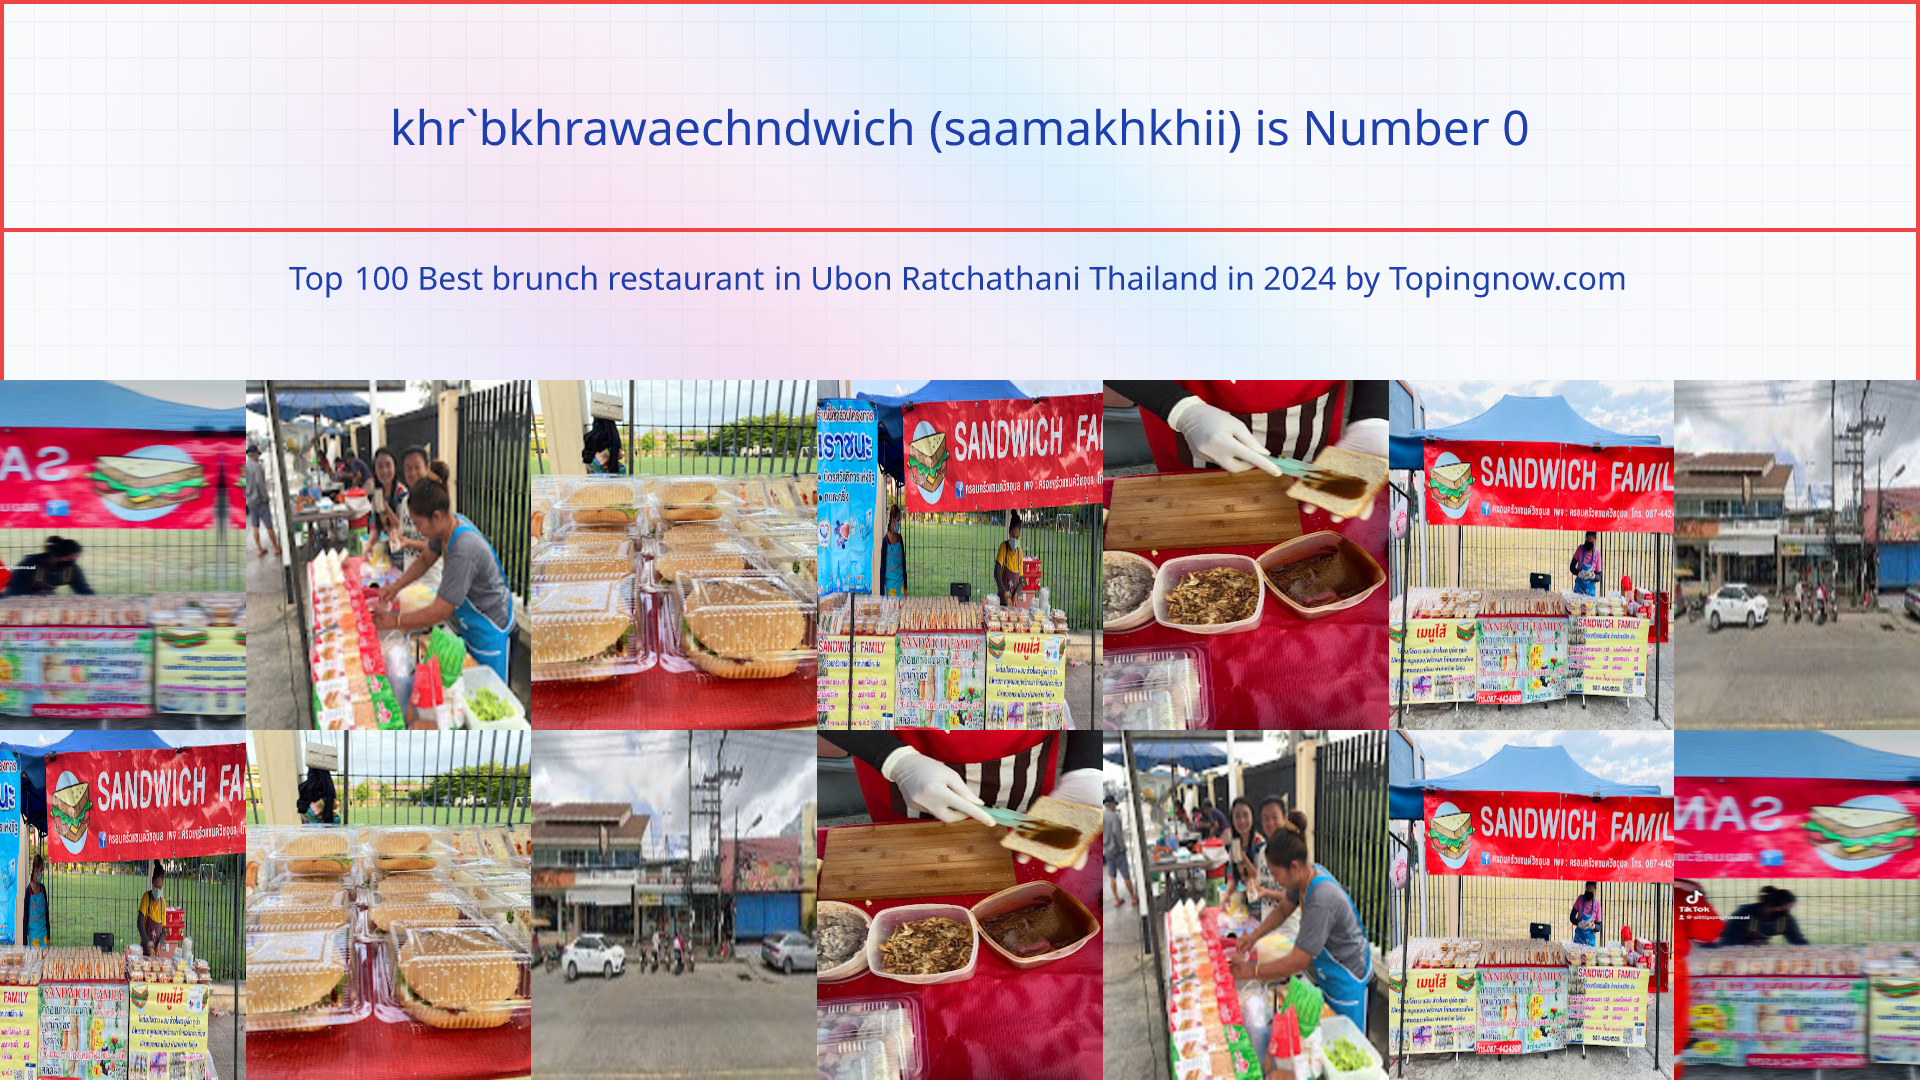 khr`bkhrawaechndwich (saamakhkhii): Top 100 Best brunch restaurant in Ubon Ratchathani Thailand in 2024